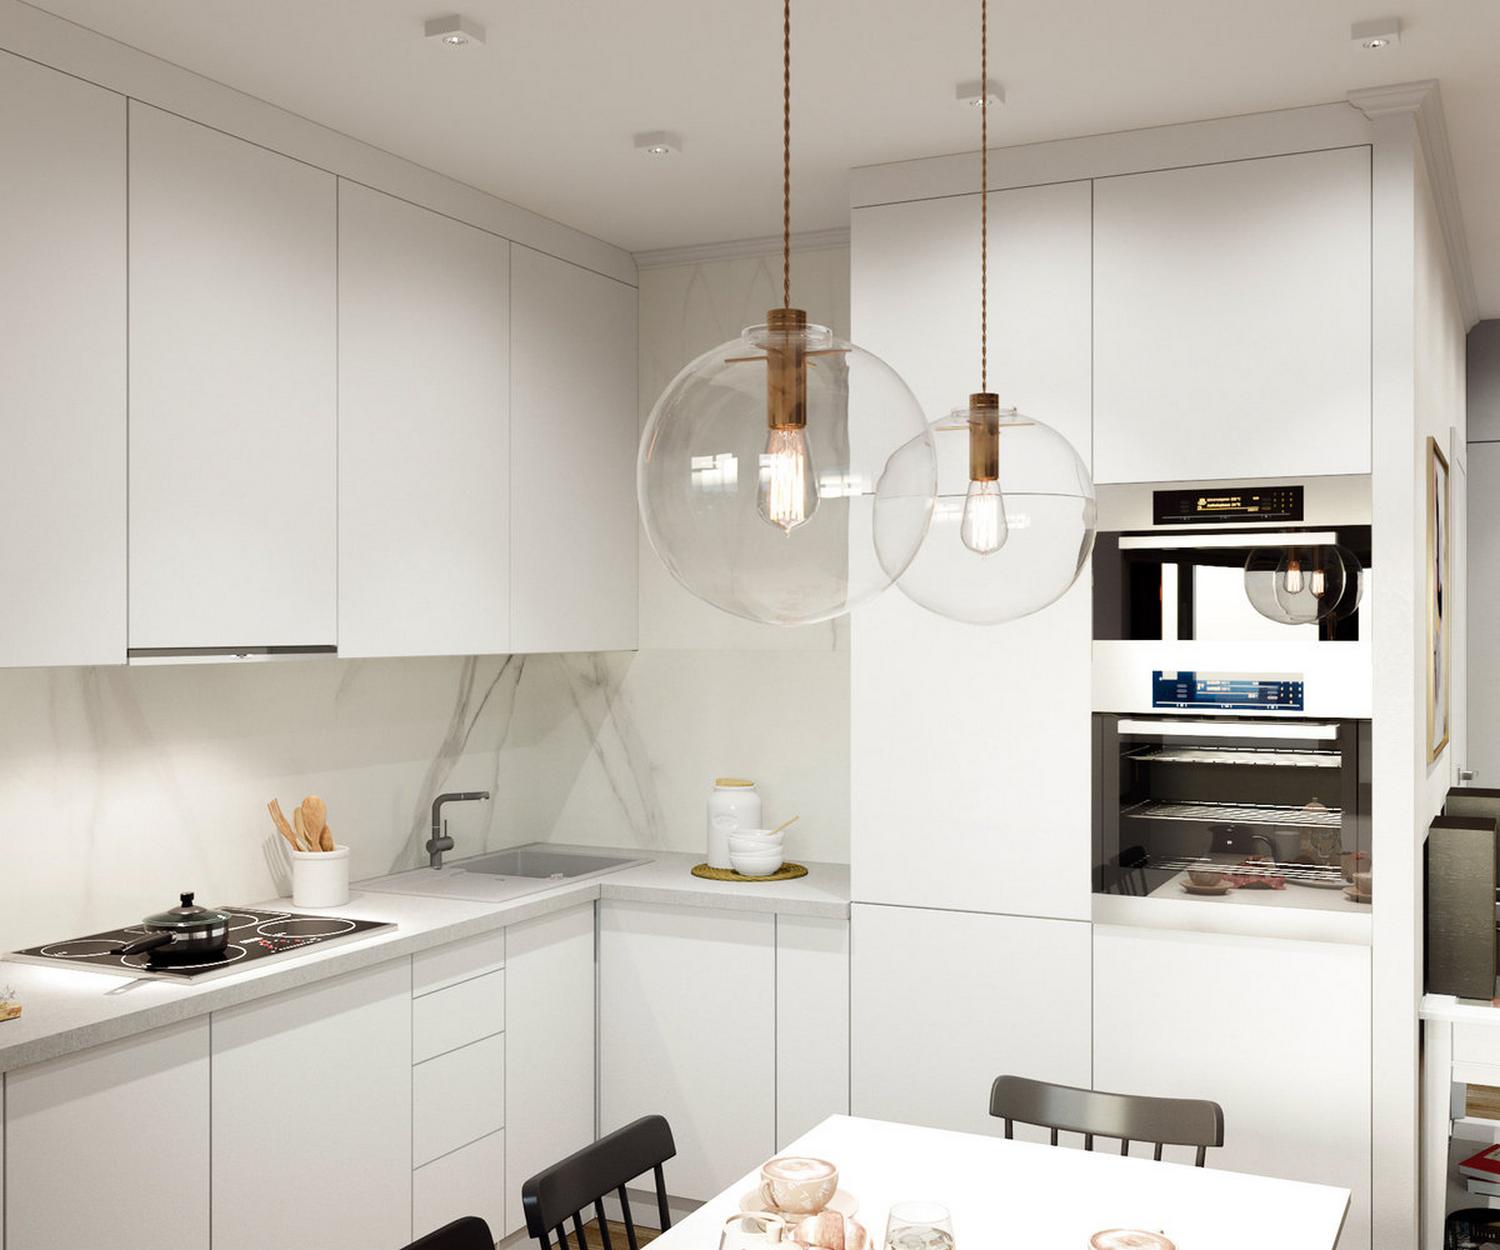 Dù diện tích nhỏ nhưng phòng bếp vẫn đáp ứng đầy đủ tiện nghi, các thiết bị nấu nướng hiện đại cùng hệ thống đèn ốp trần cho cảm giác không gian cao và thoáng hơn rất nhiều.